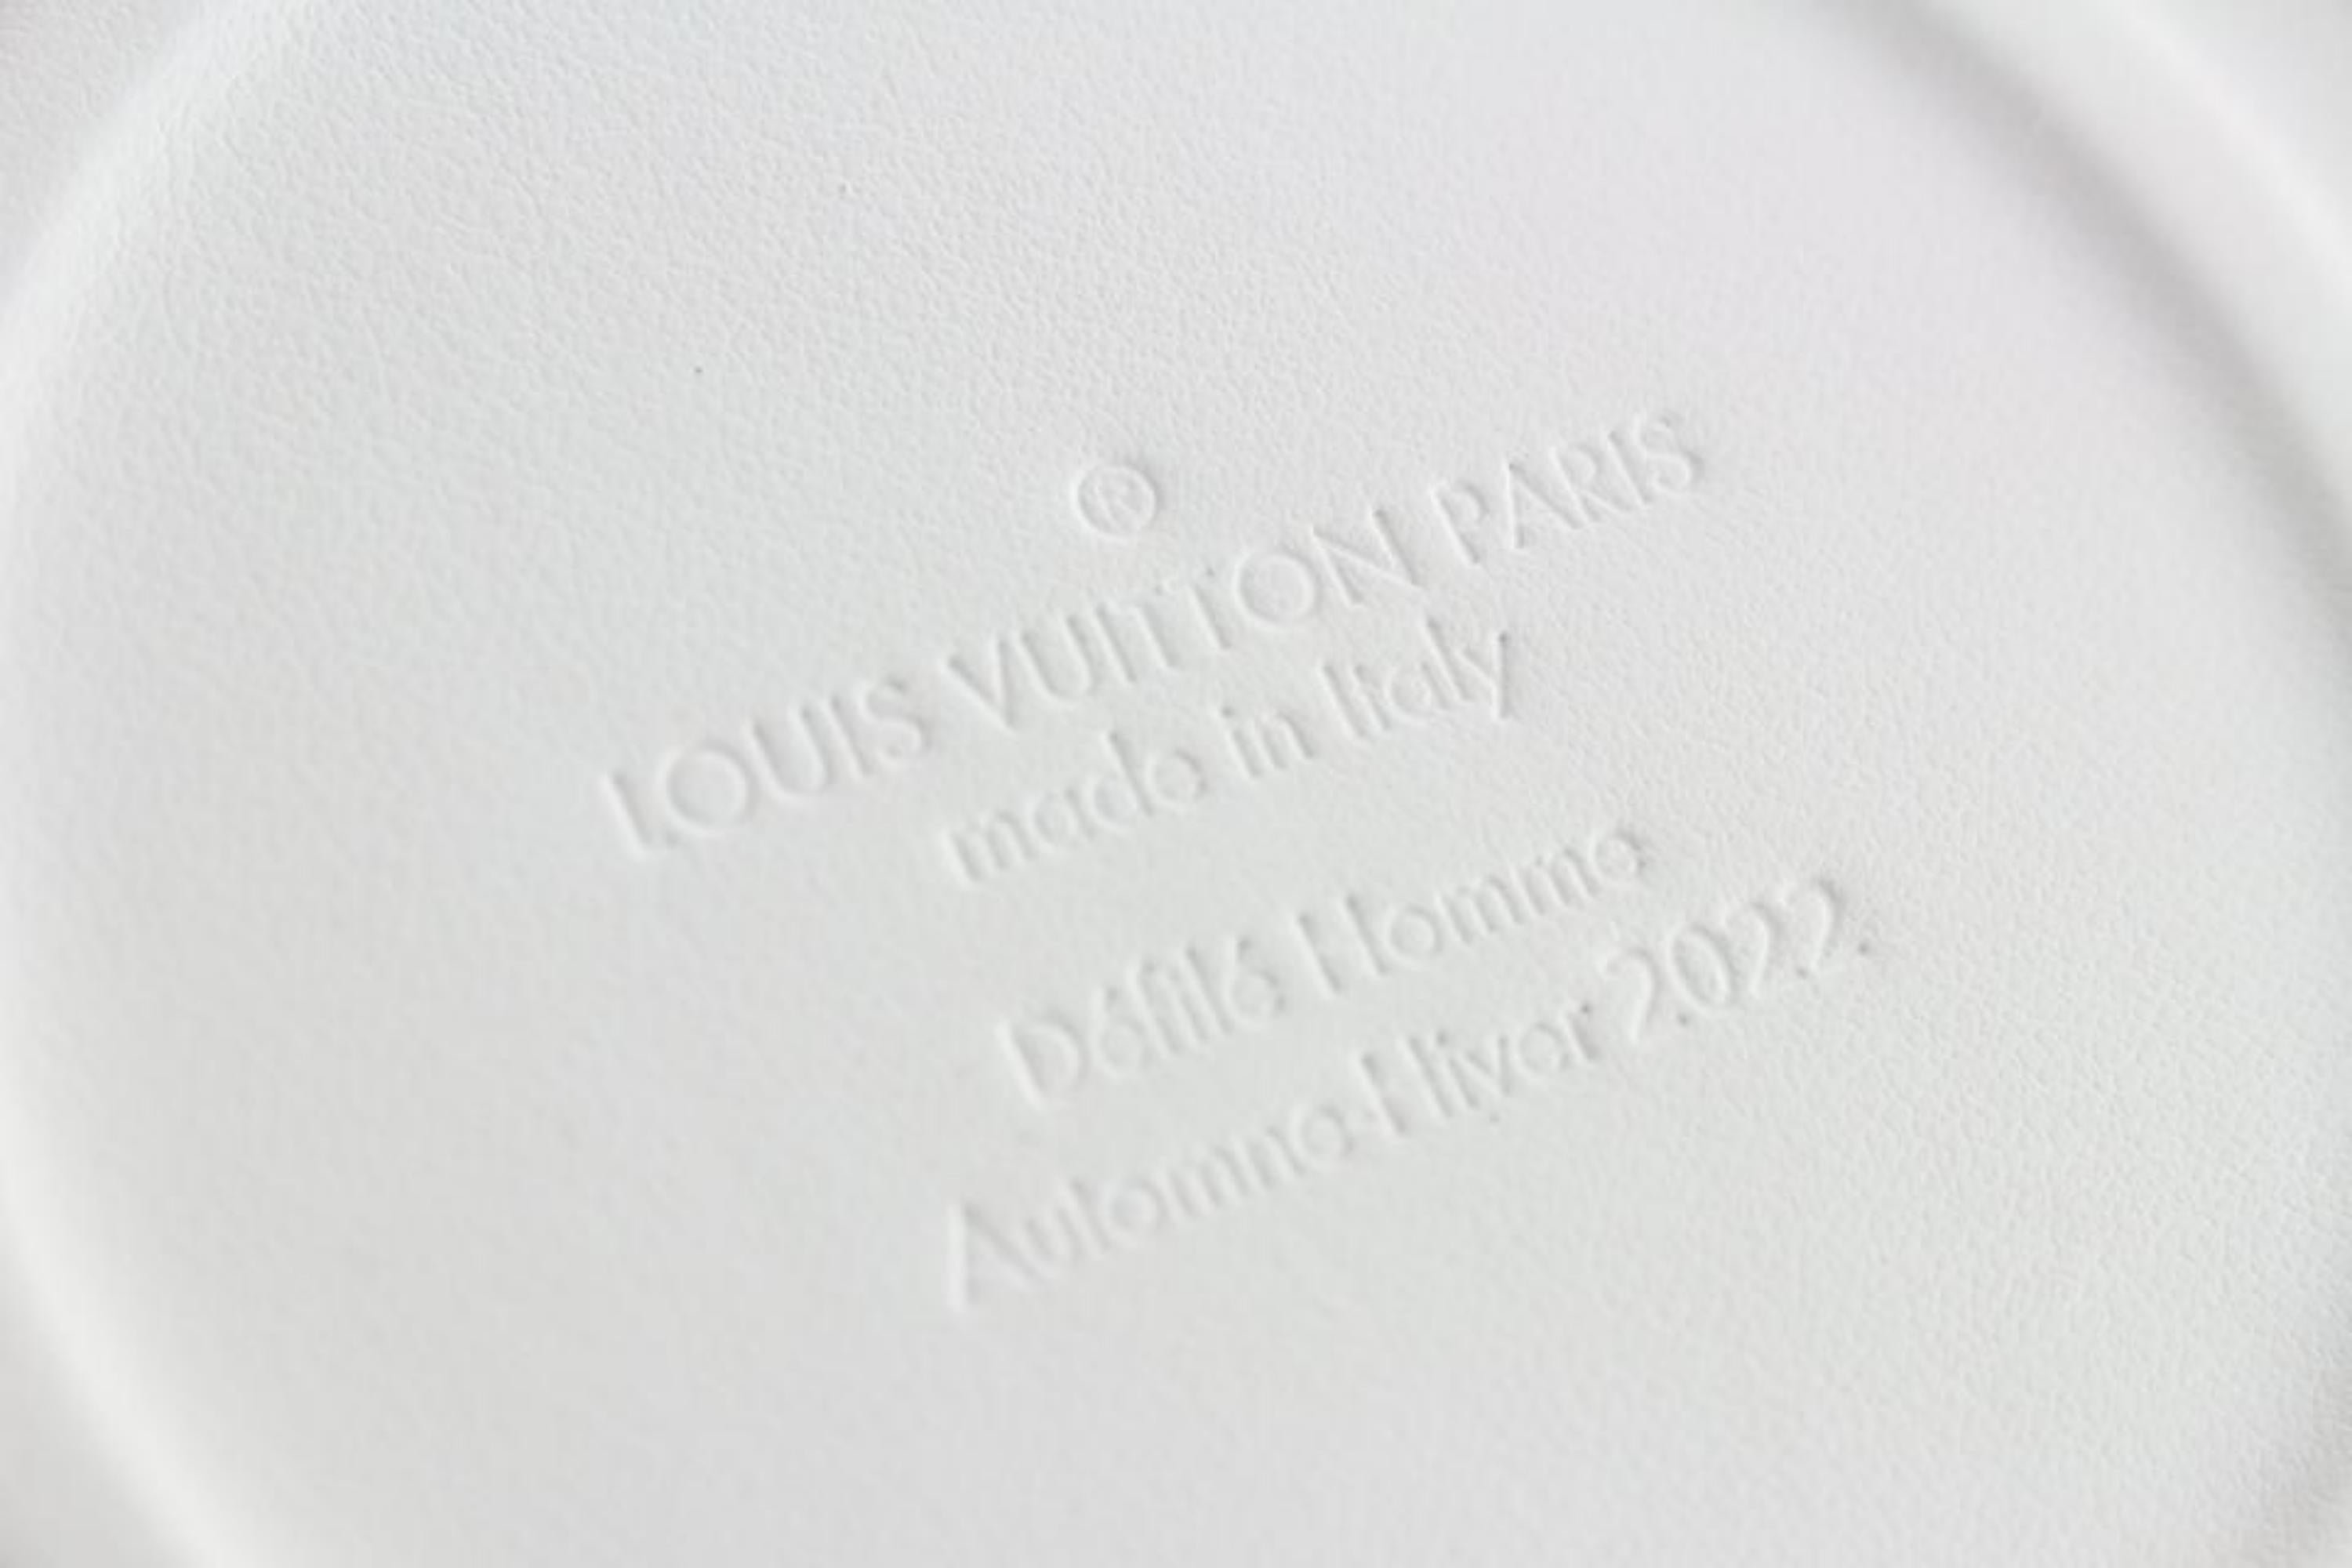 Bags Briefcases Louis Vuitton Paint Can Virgil Abloh